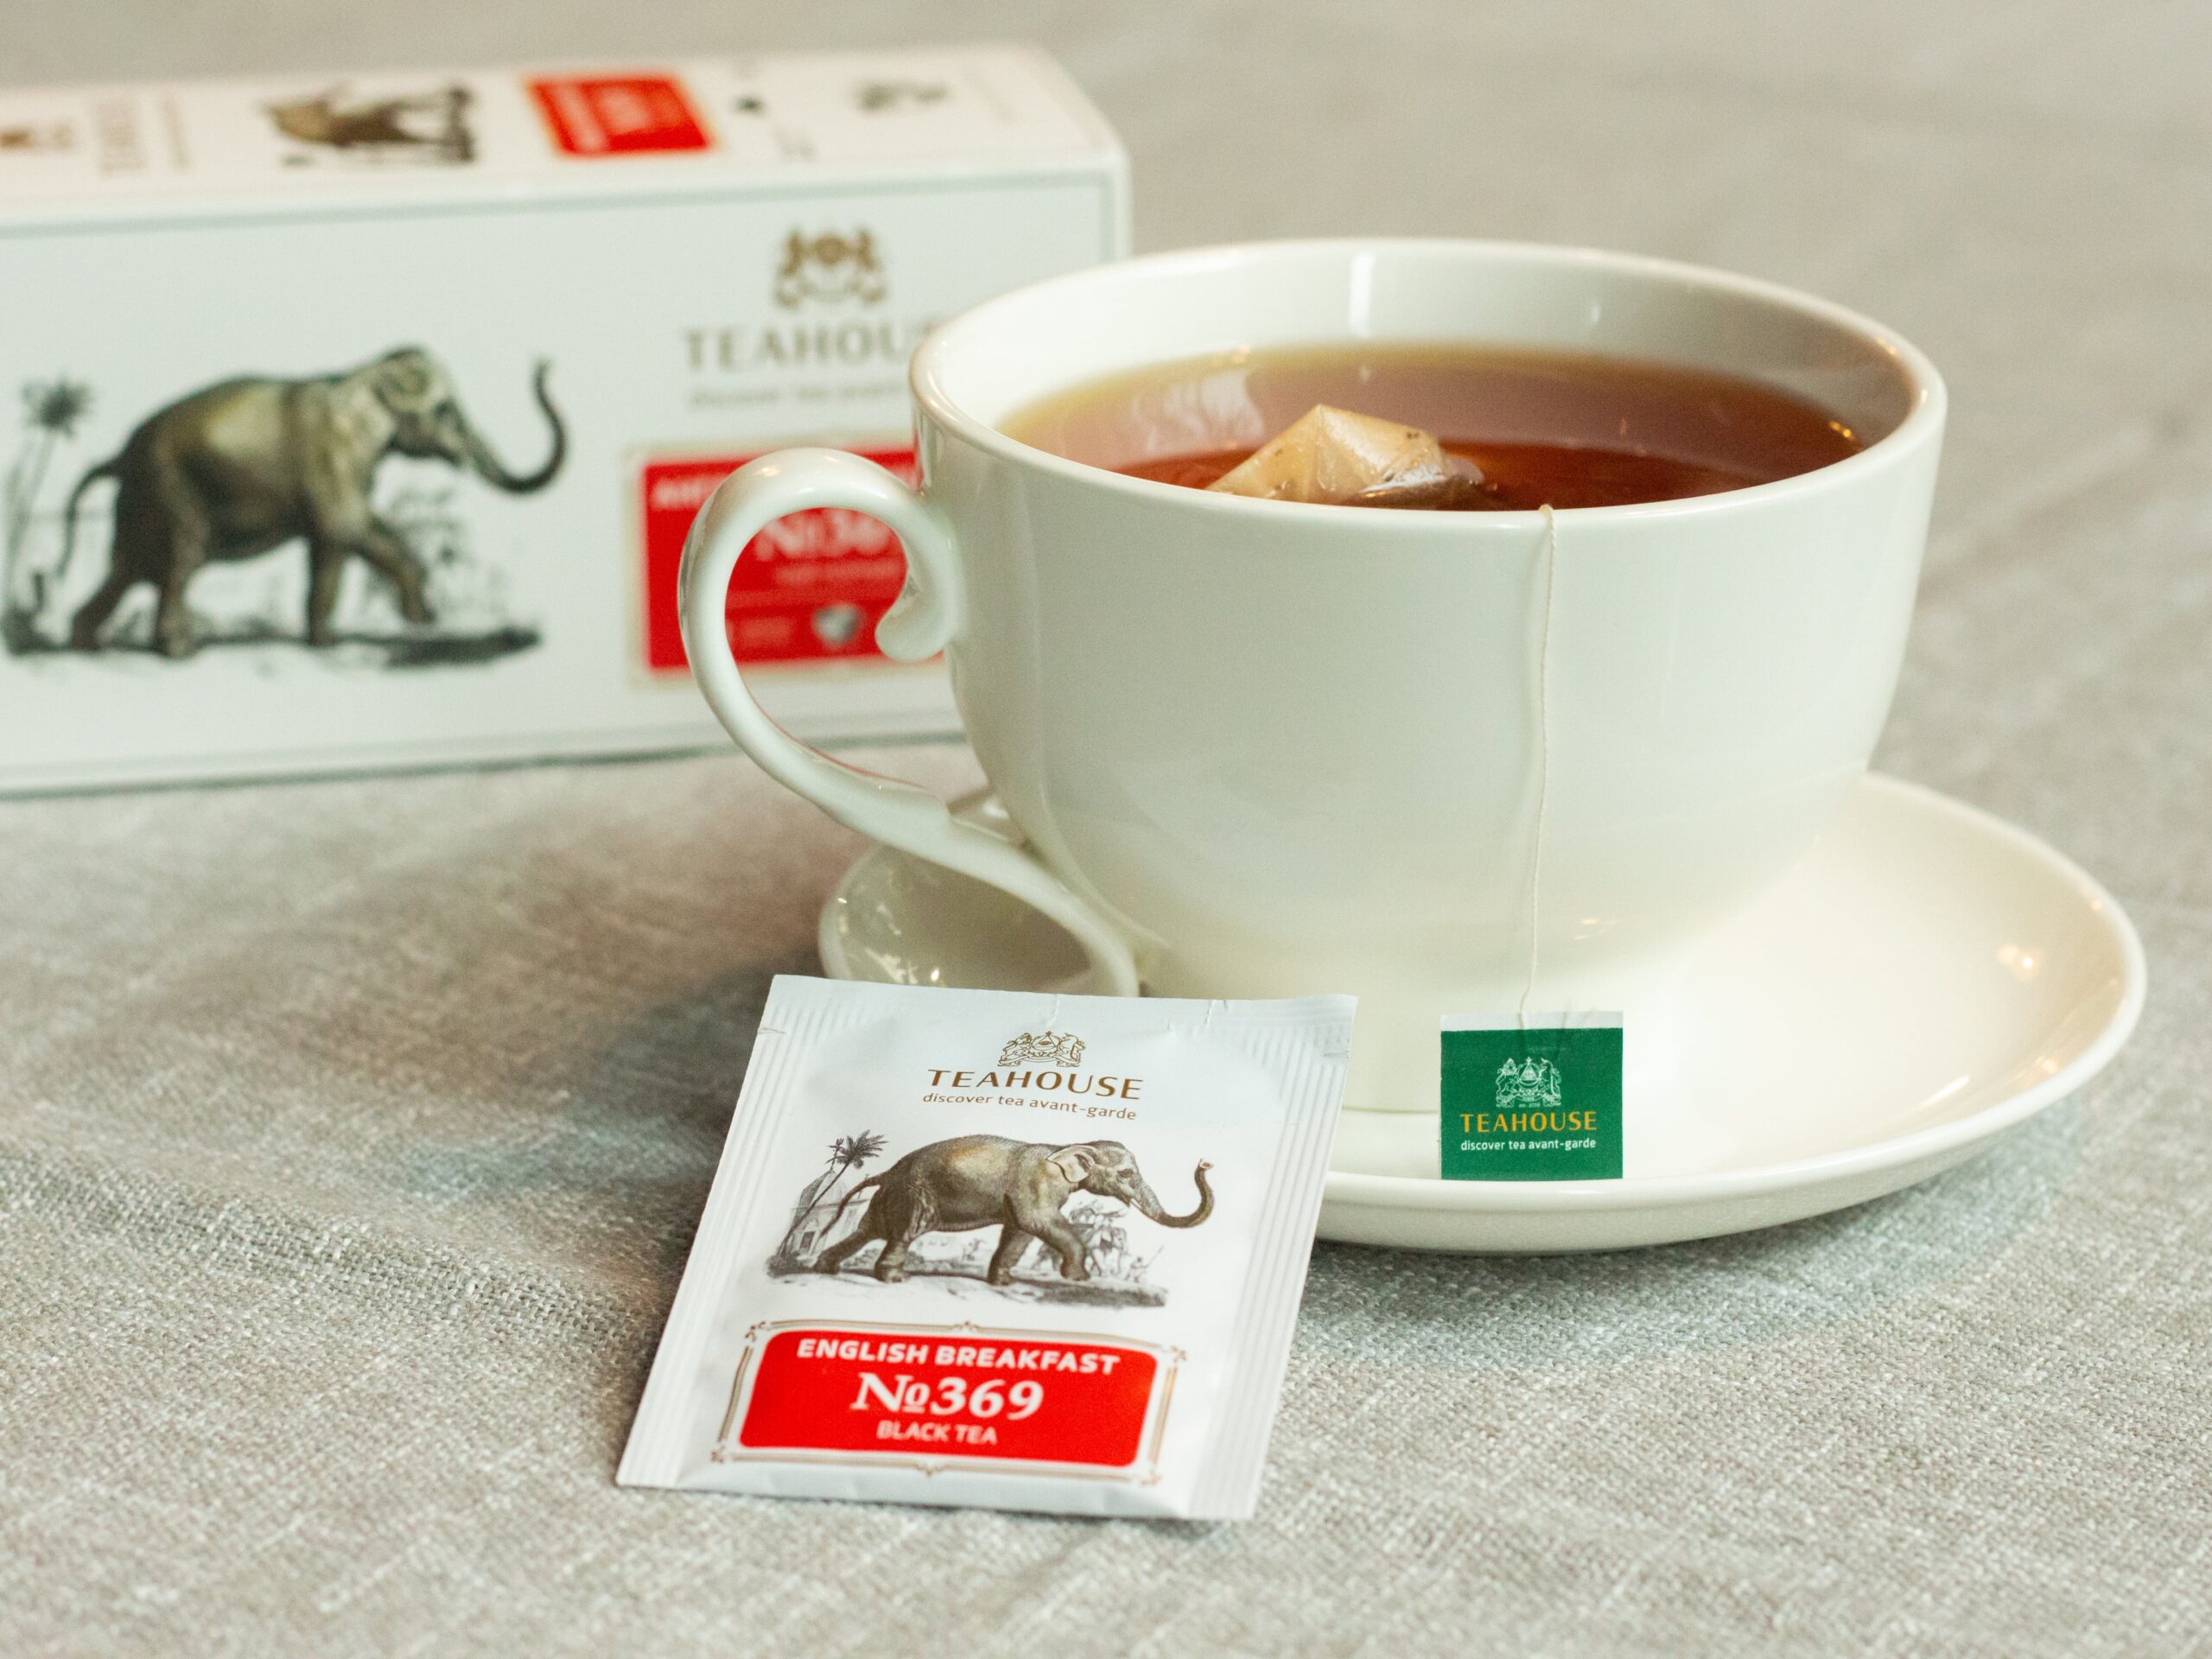 Чай в саше Английский завтрак Слон 2г*22шт